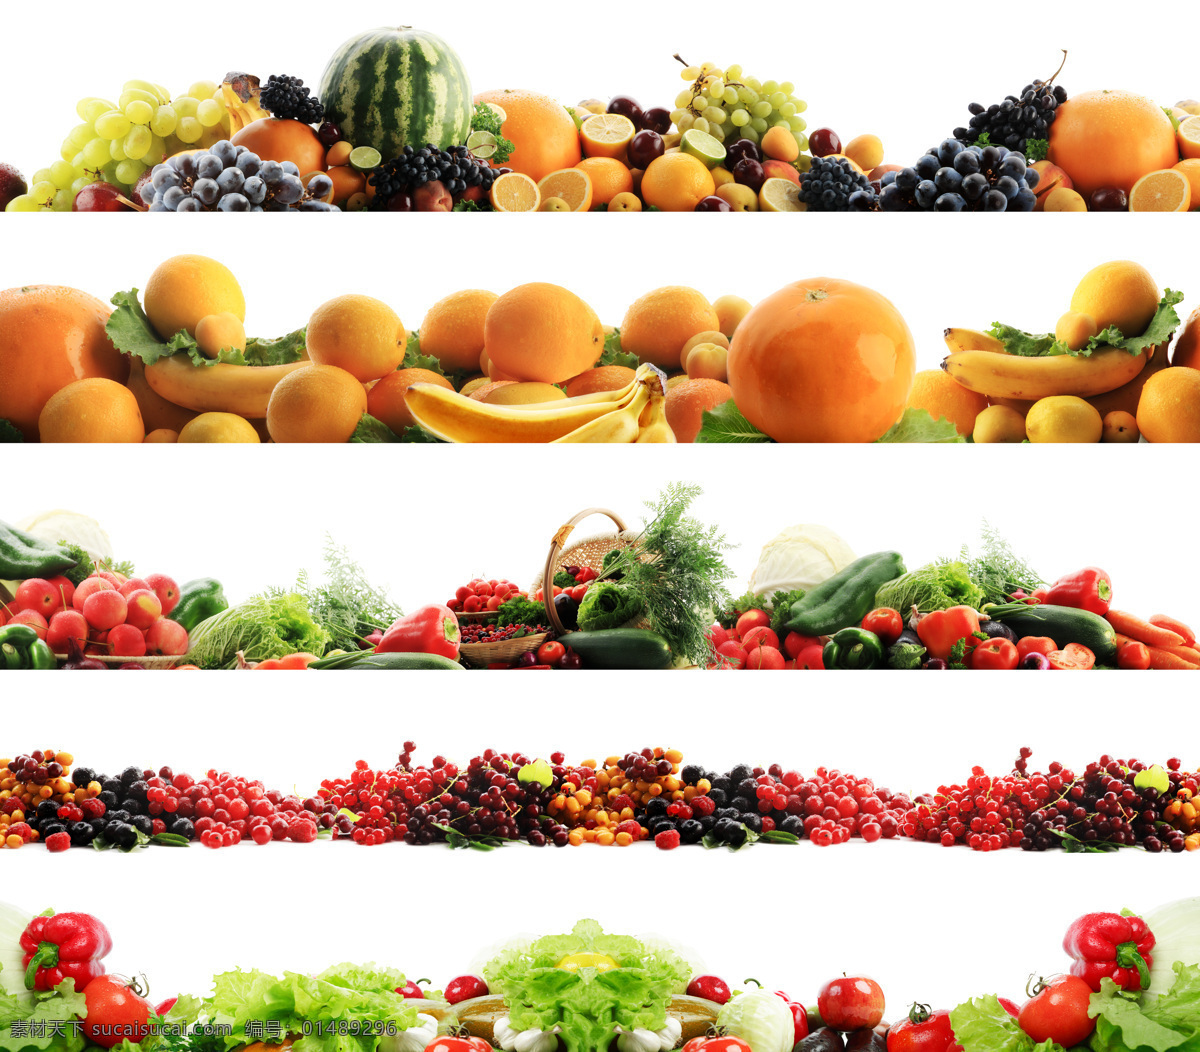 水果 蔬菜 边框 素材图片 辣椒 包心菜 西红柿 香蕉 葡萄 椰子 苹果 梨子 西瓜 高清图片 水果图片 餐饮美食